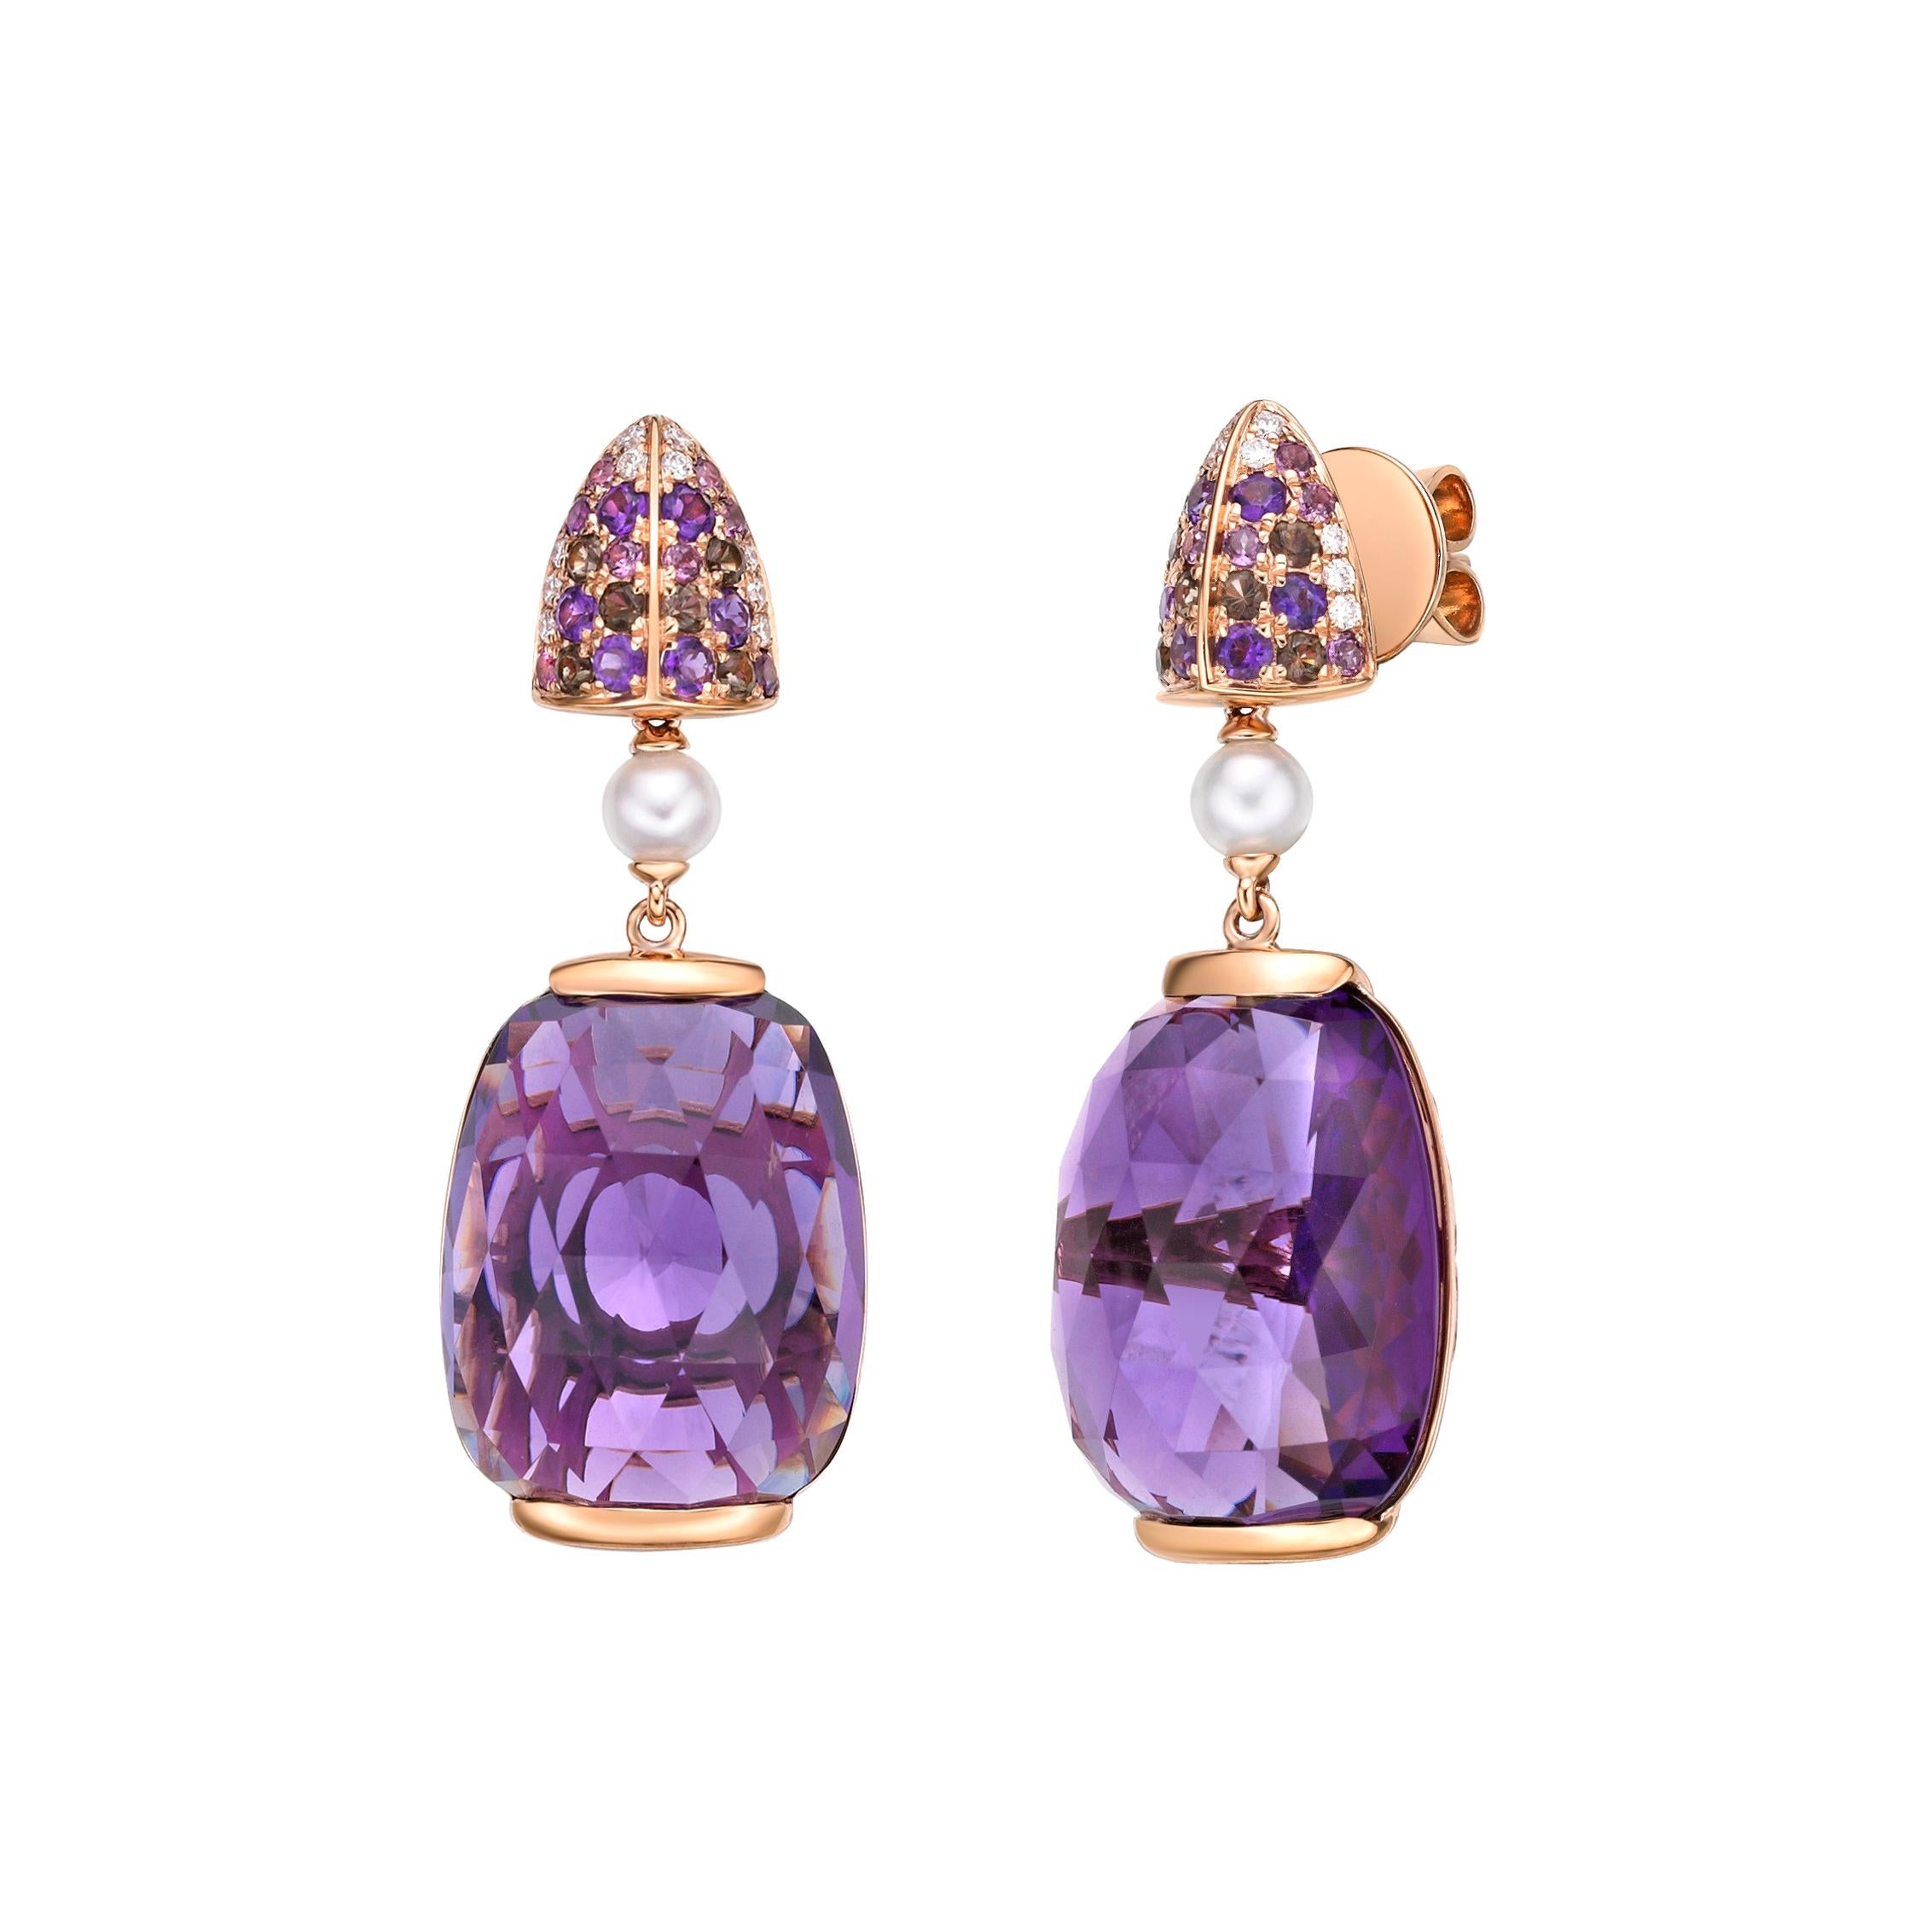 Modern 33 Carat Amethyst Earrings with Gemstones, Pearl & Diamond in 18 Karat Rose Gold